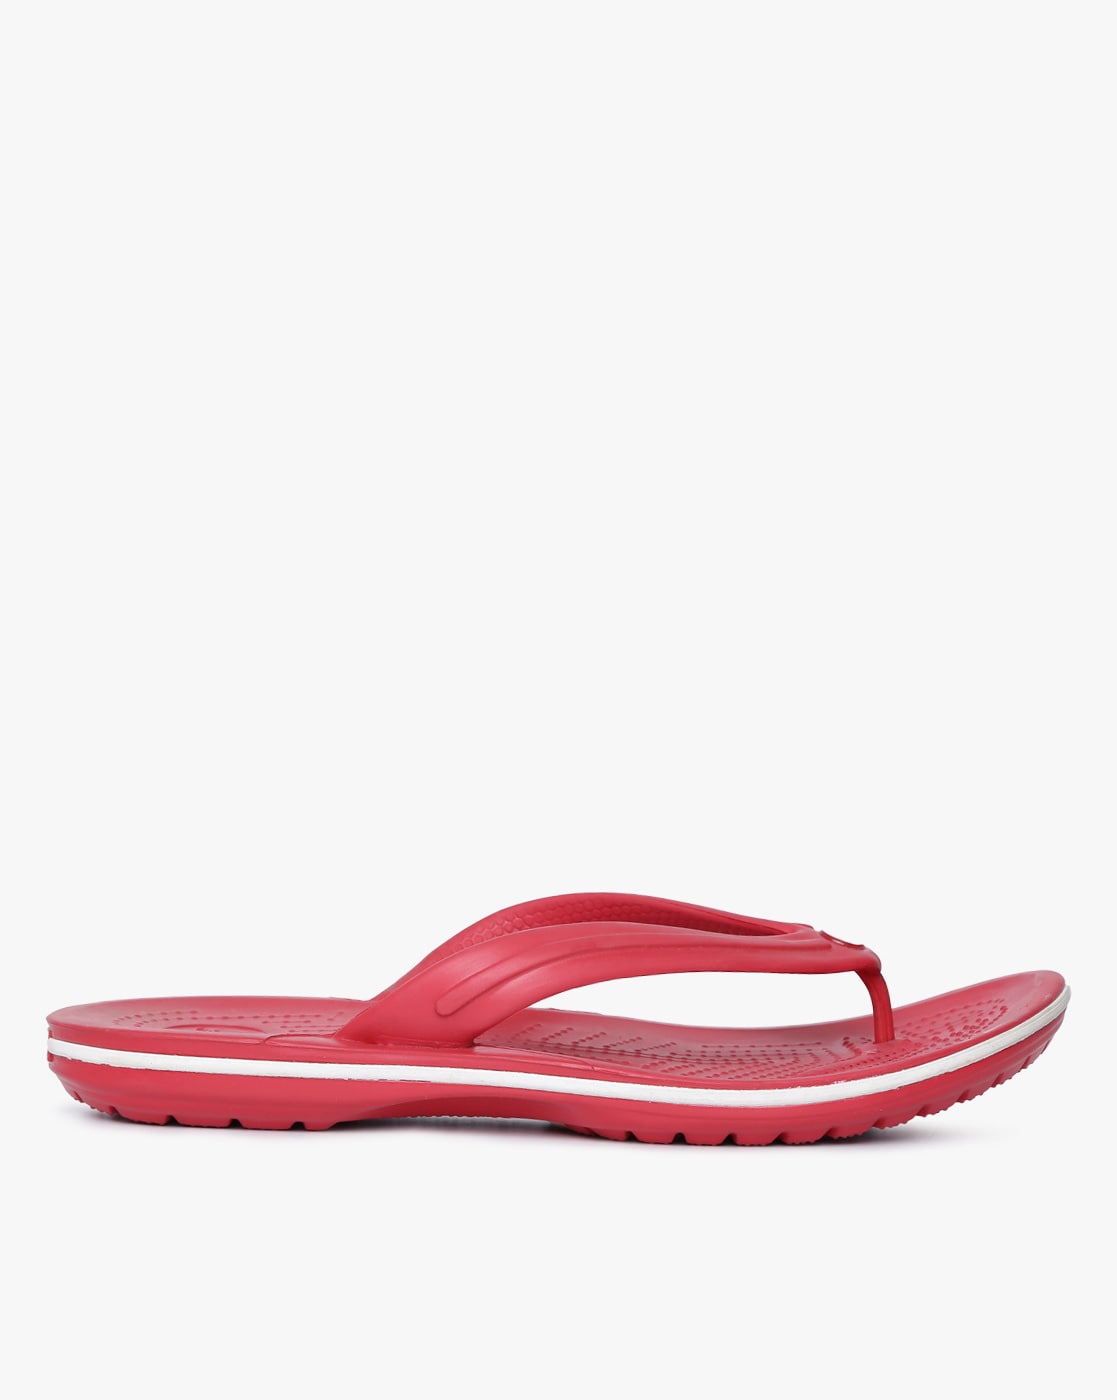 red crocs flip flops